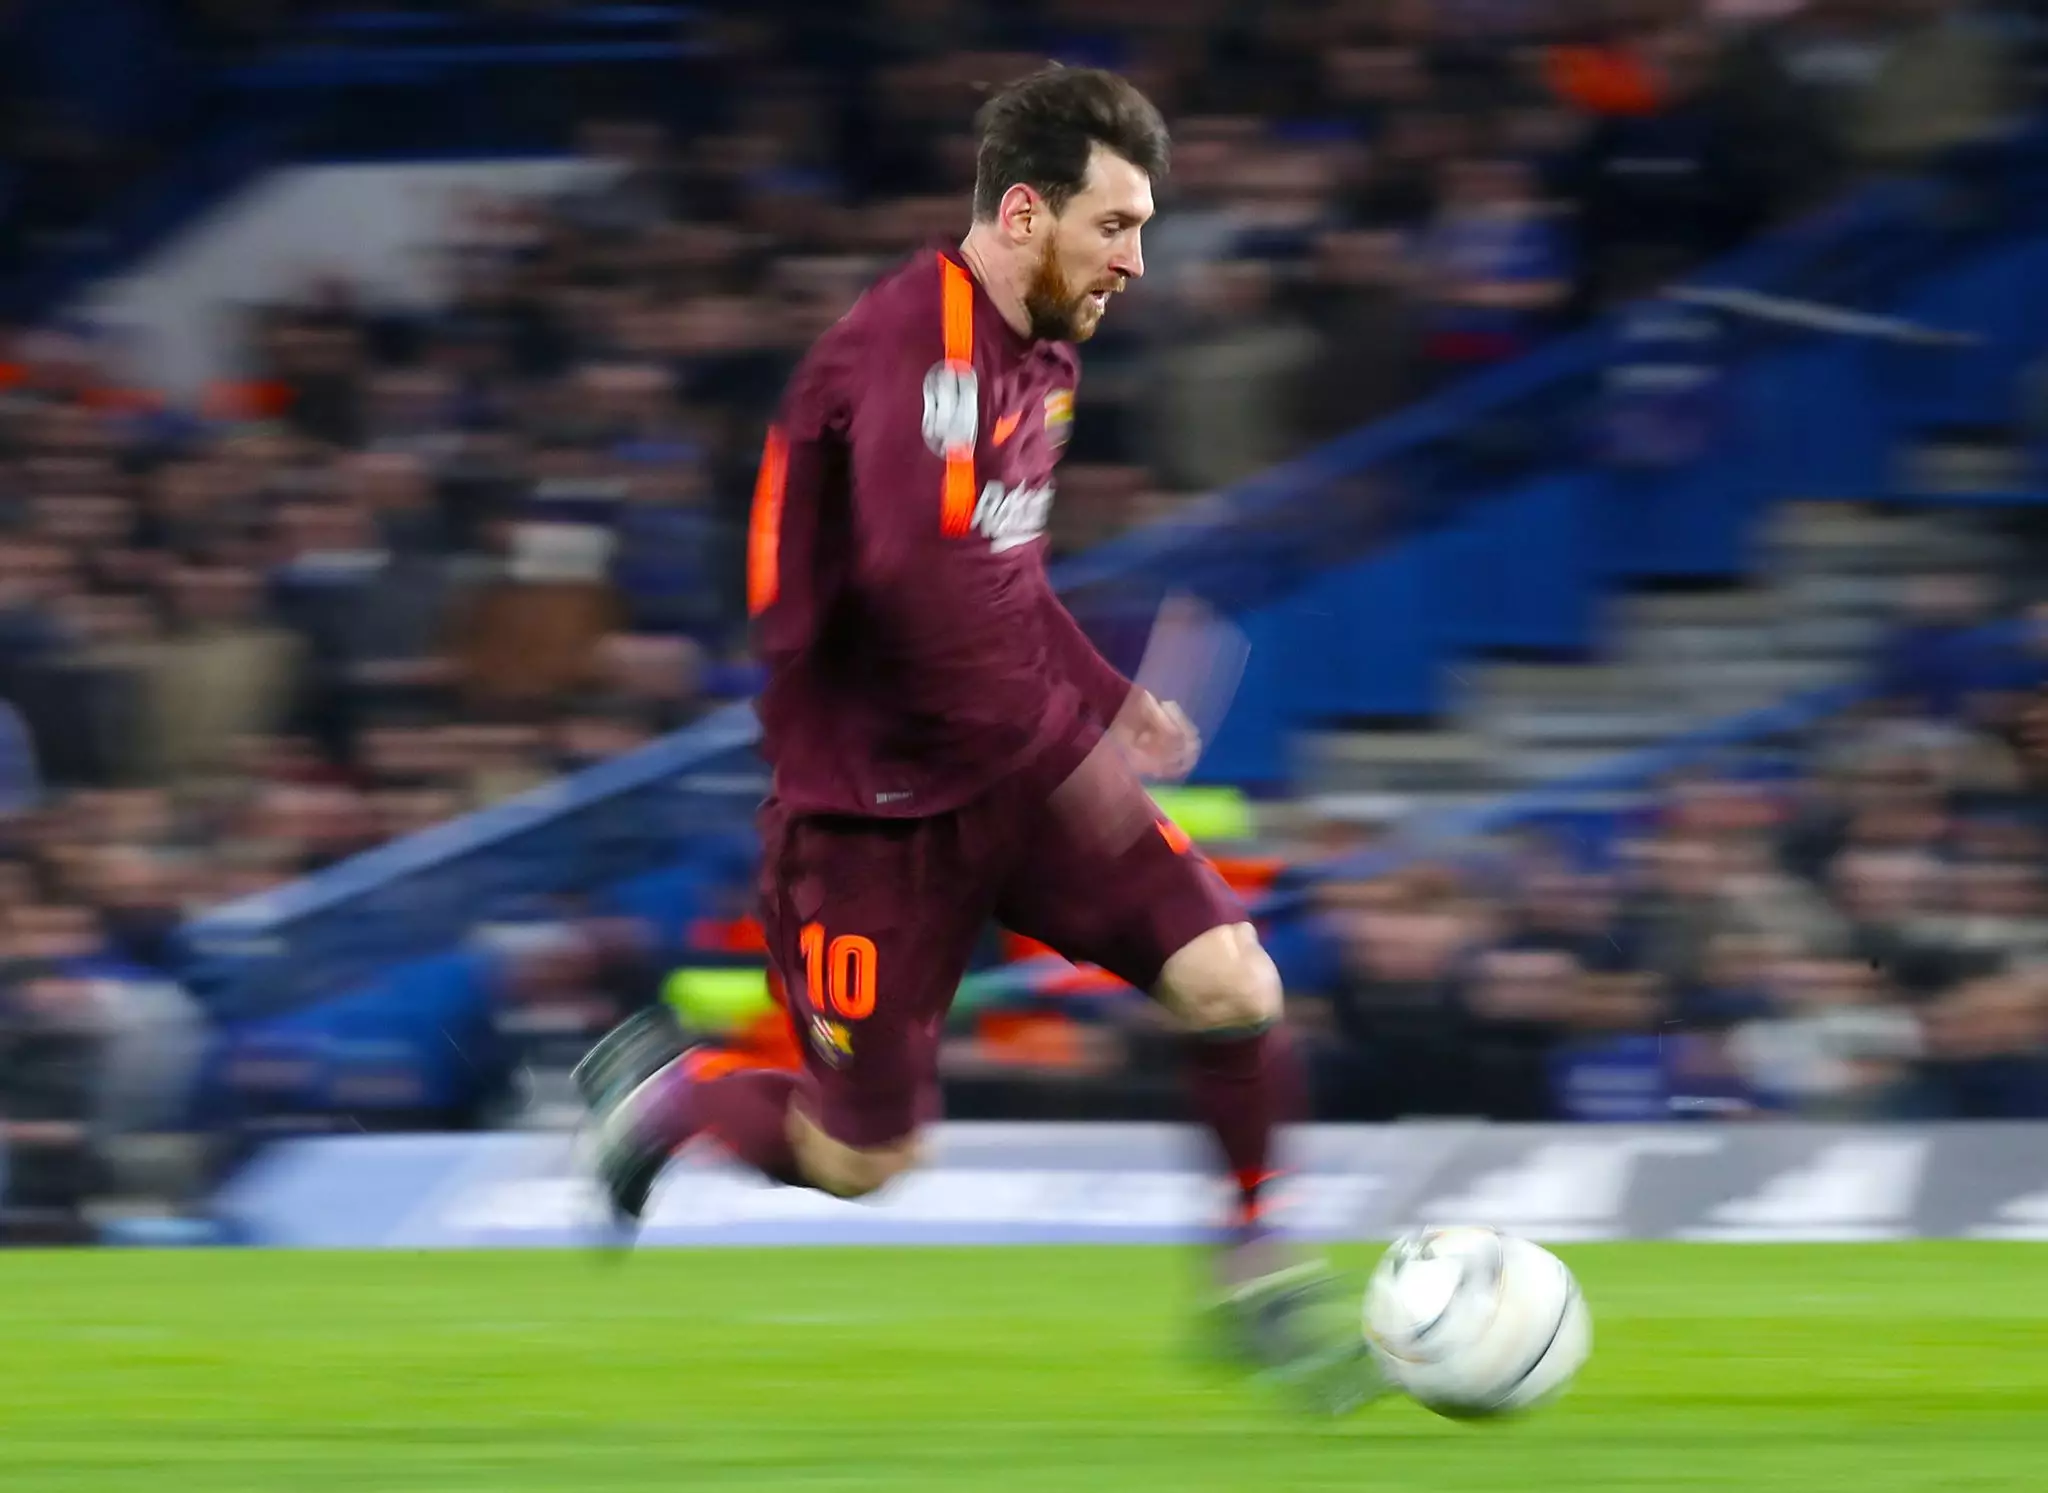 Messi in action at Stamford Bridge. Image: PA